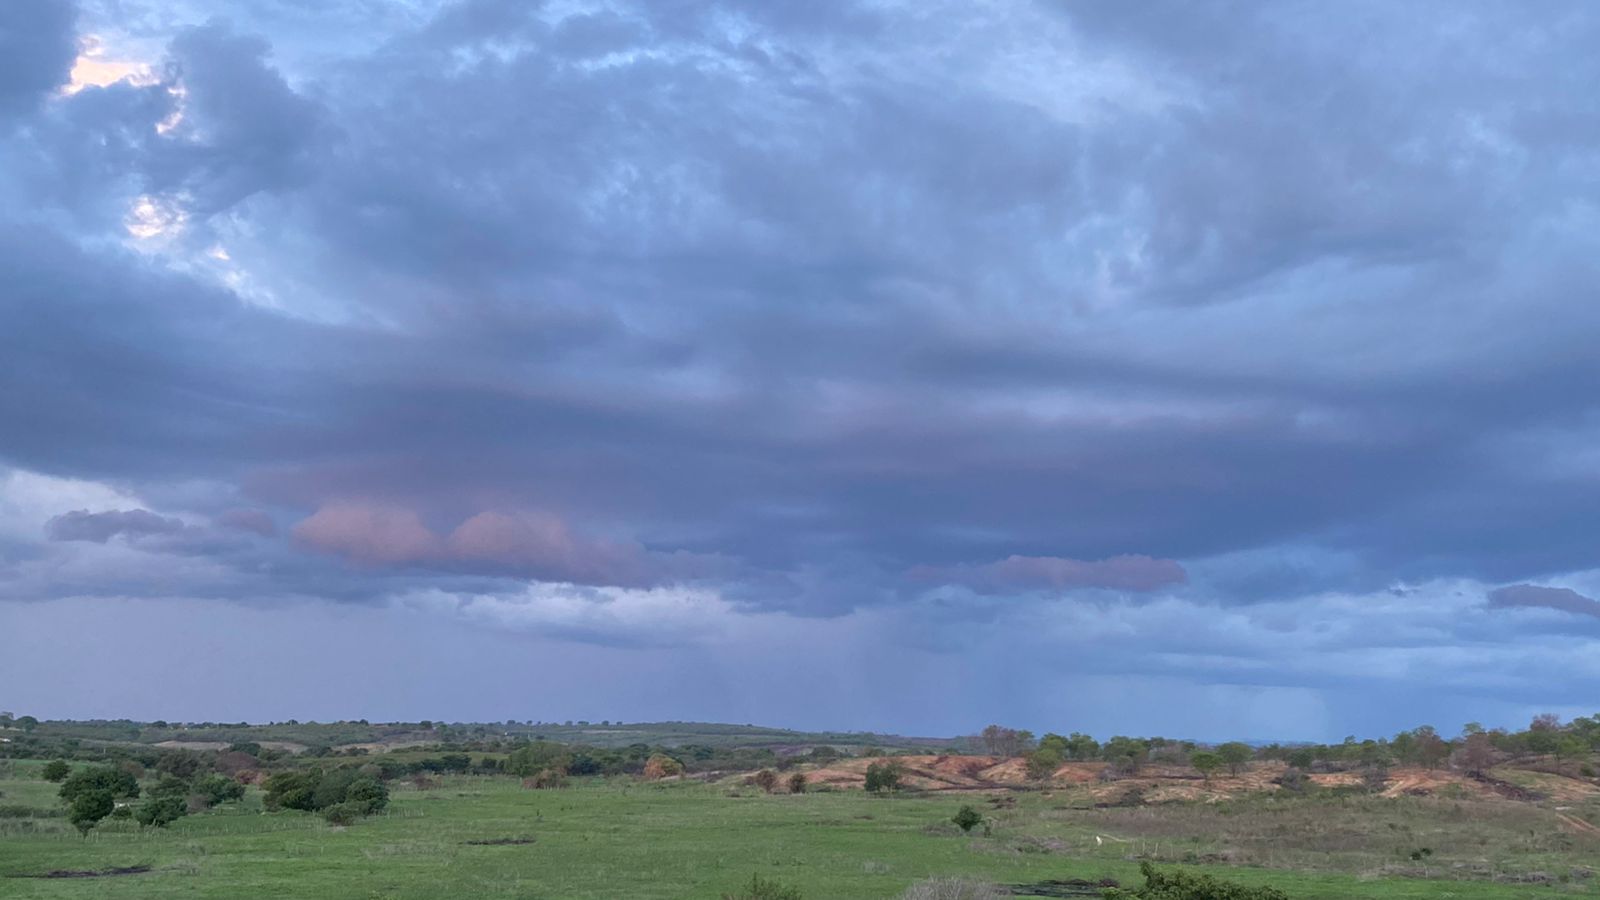 Cobertura de nuvens deverá ser maior no início dos dias (FOTO: Marciel Bezerra)